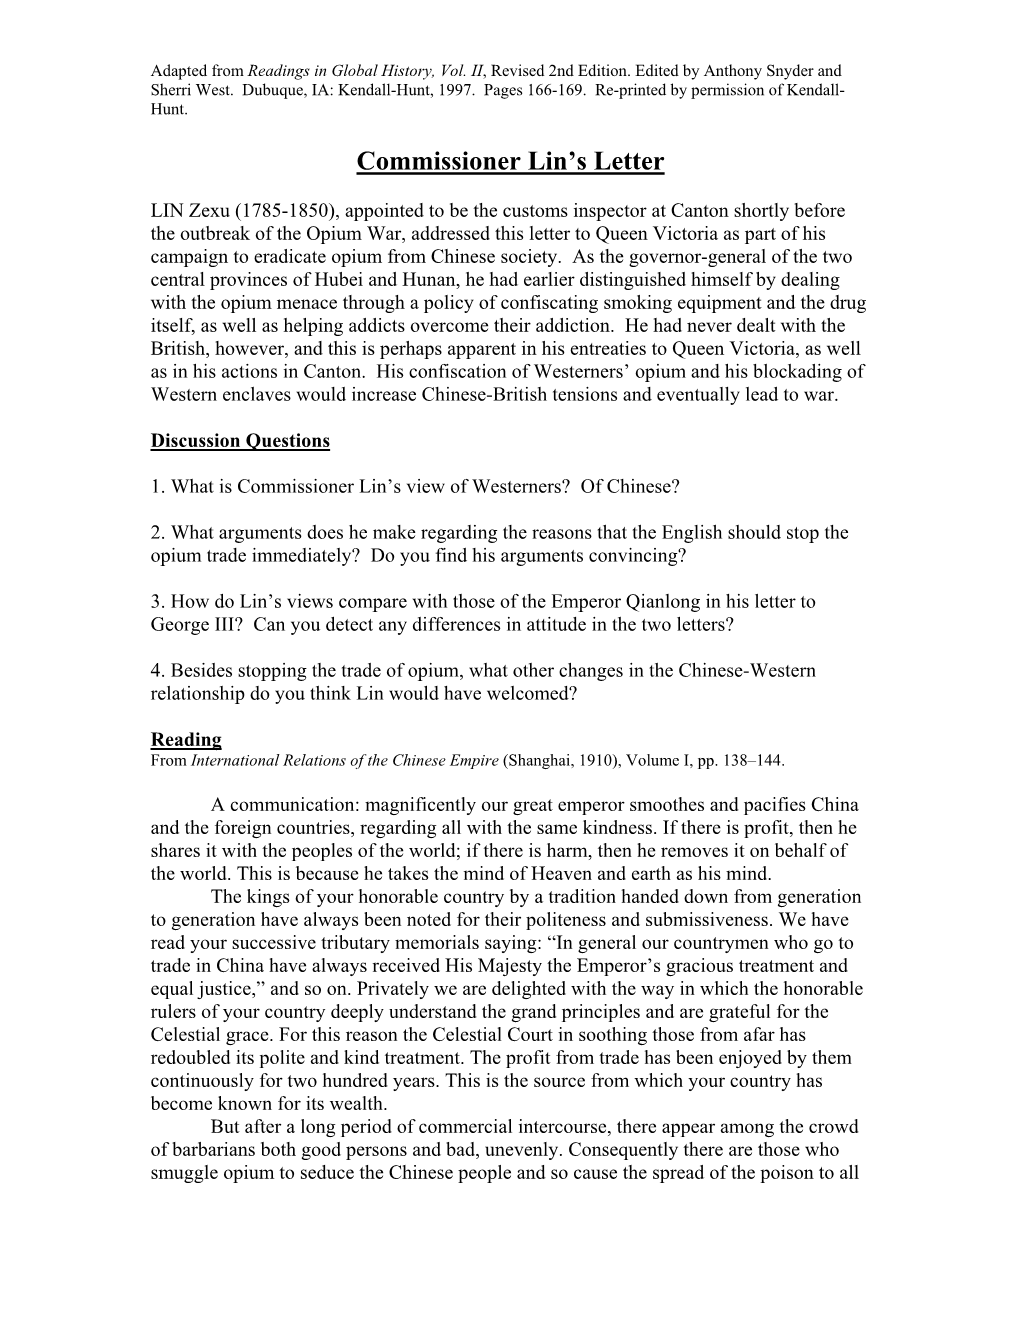 commissioner-lin-s-letter-docslib